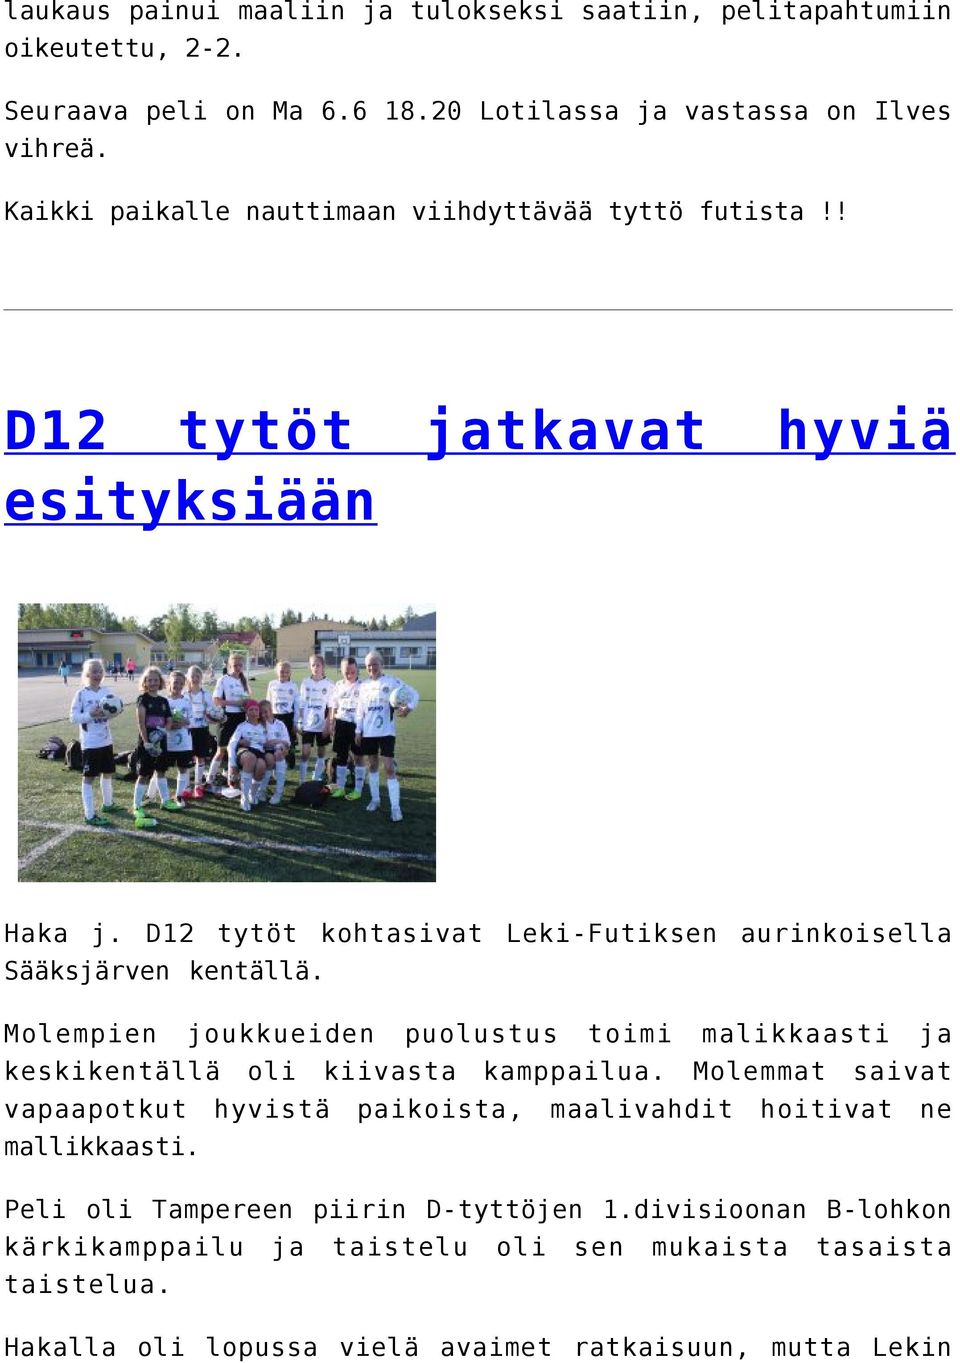 D12 tytöt kohtasivat Leki-Futiksen aurinkoisella Sääksjärven kentällä. Molempien joukkueiden puolustus toimi malikkaasti ja keskikentällä oli kiivasta kamppailua.